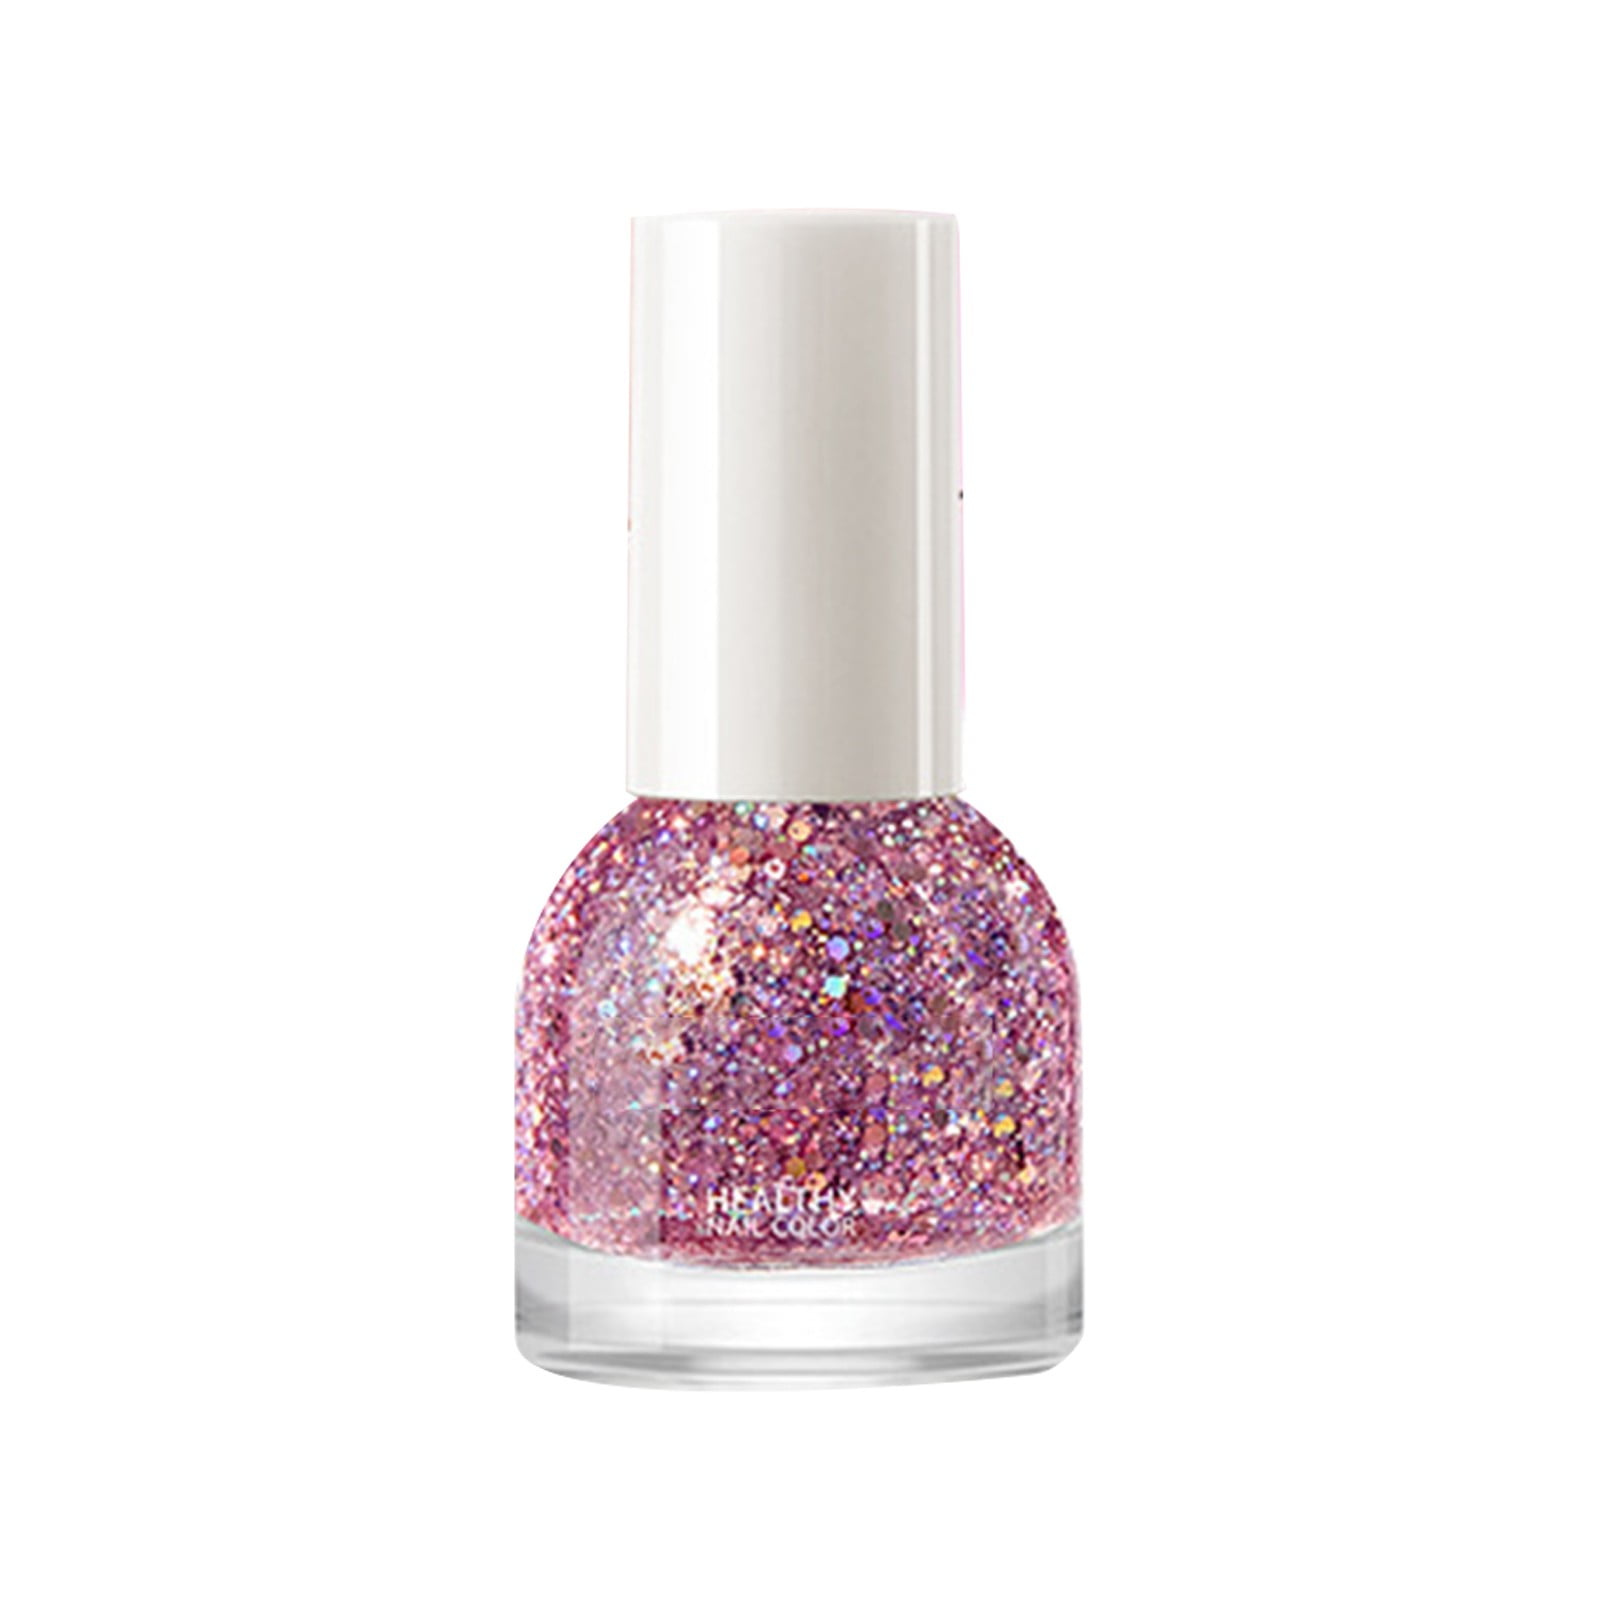 Neon Pink Nail Polish Wrapsnail Polish Wraps - Etsy | Opi nail colors, Nail  polish, Hard nails